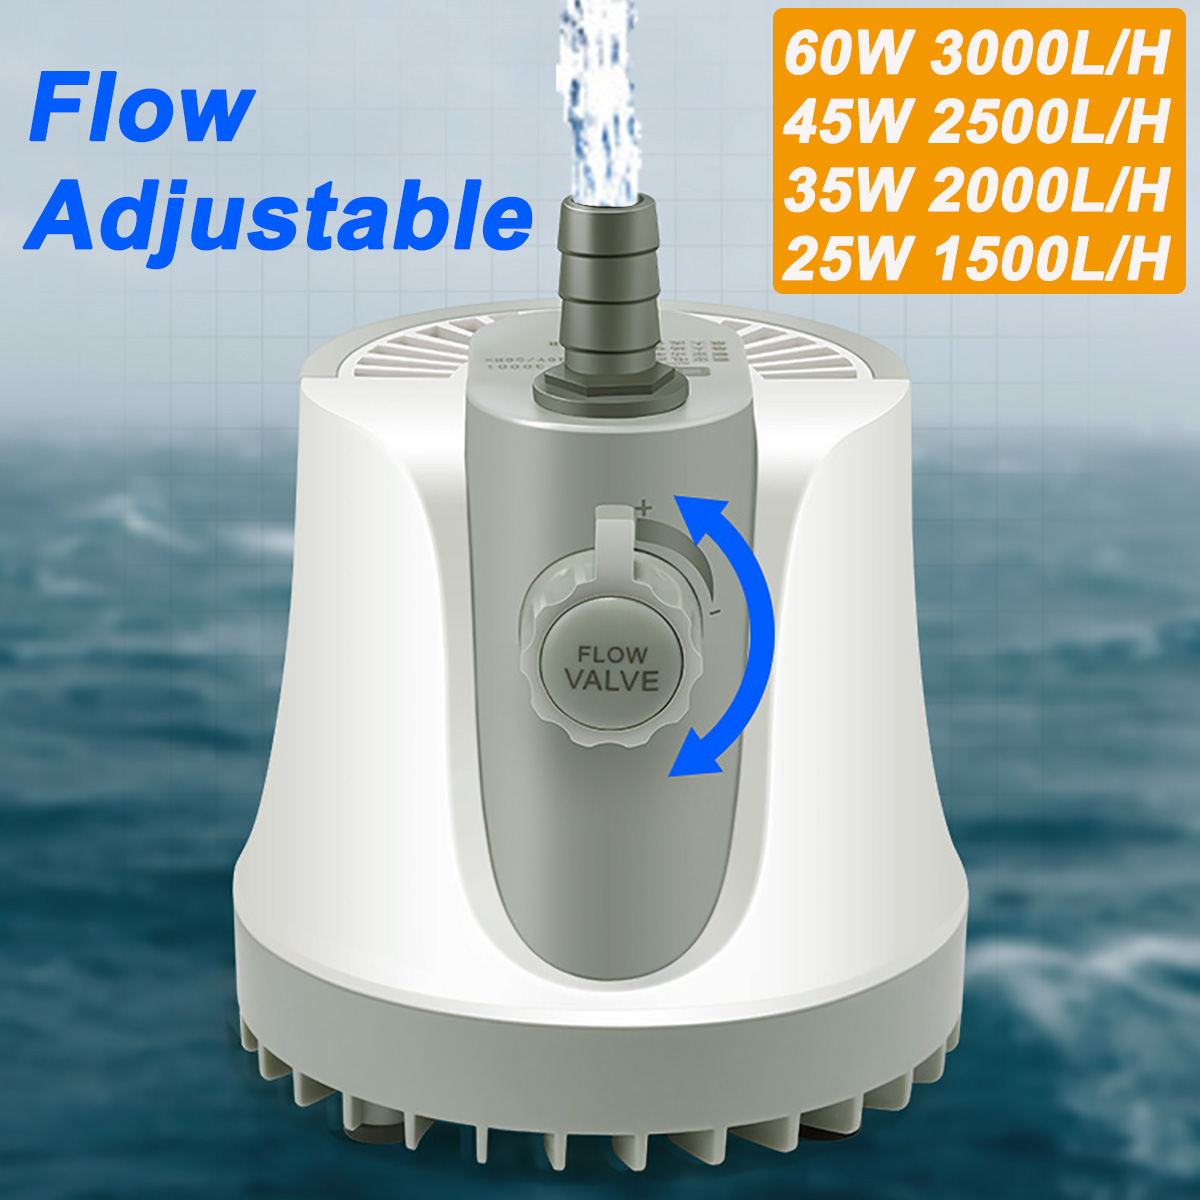 Flow Adjustable Pump Spout Submersible Water Pump for Fountains Ponds Aquarium Fish Tank 